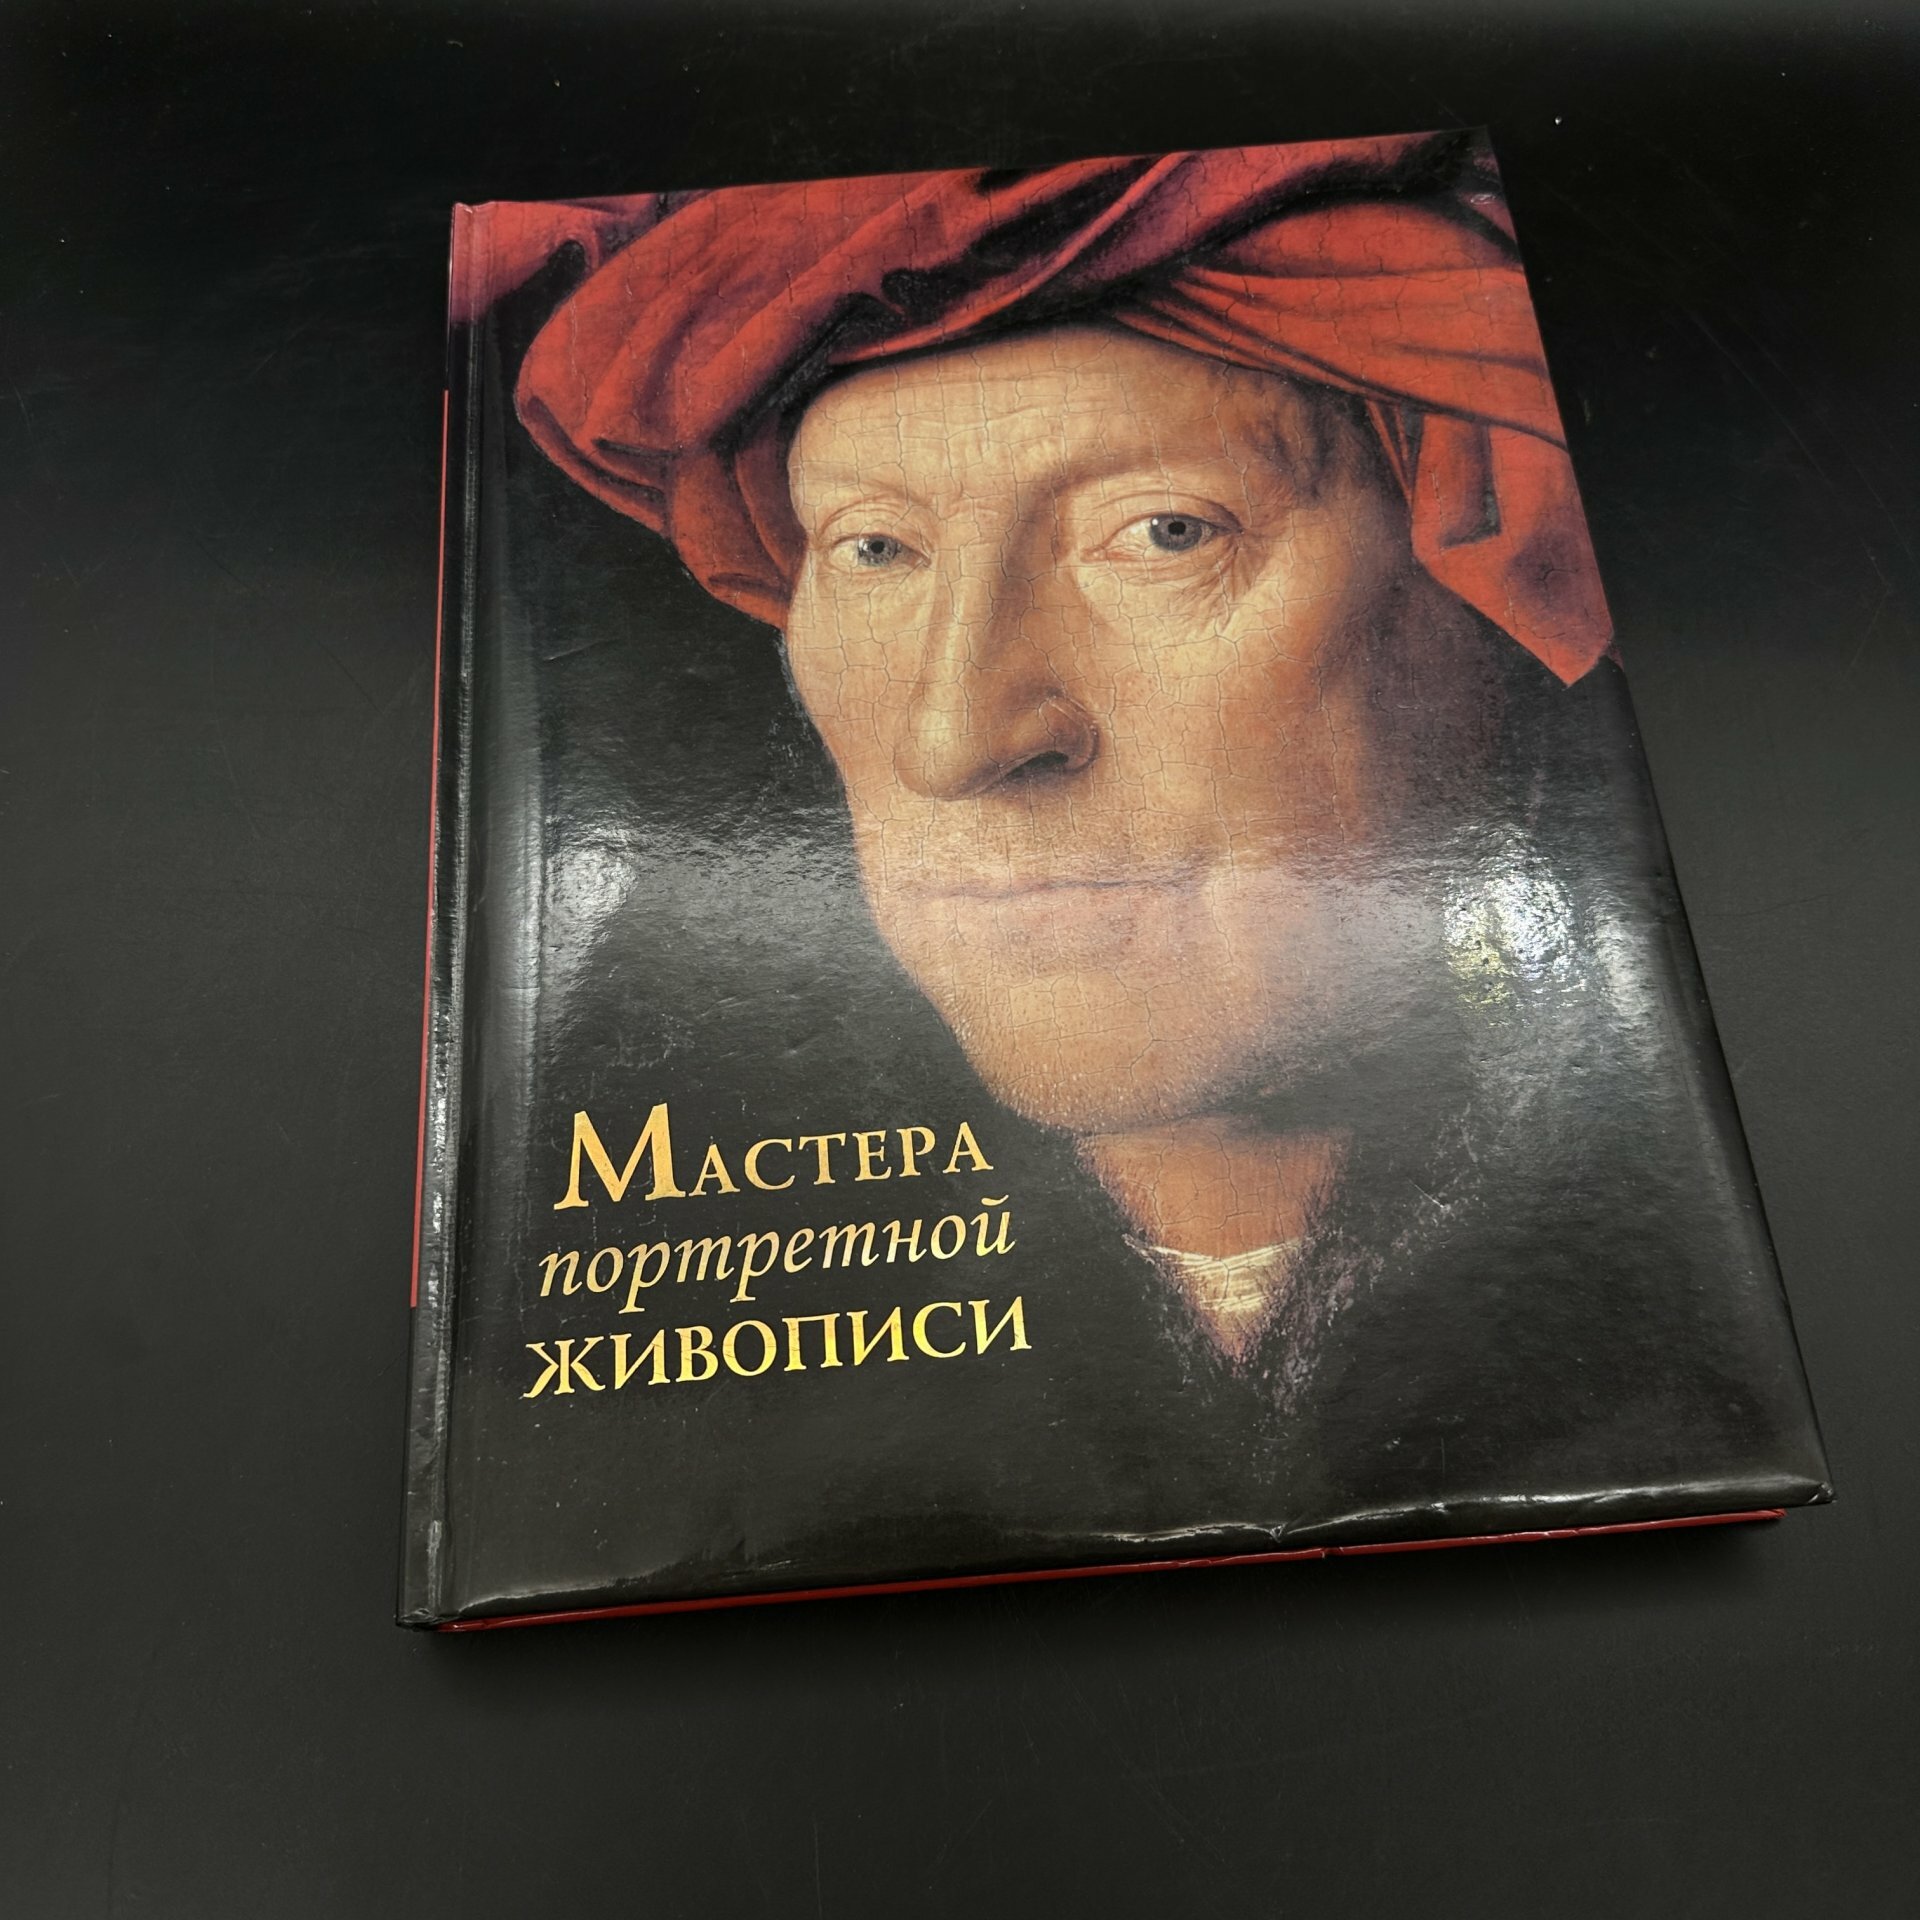 Книга "Мастера портретной живописи" М.Ю. Торопыгина Л. А. Ефремова бумага